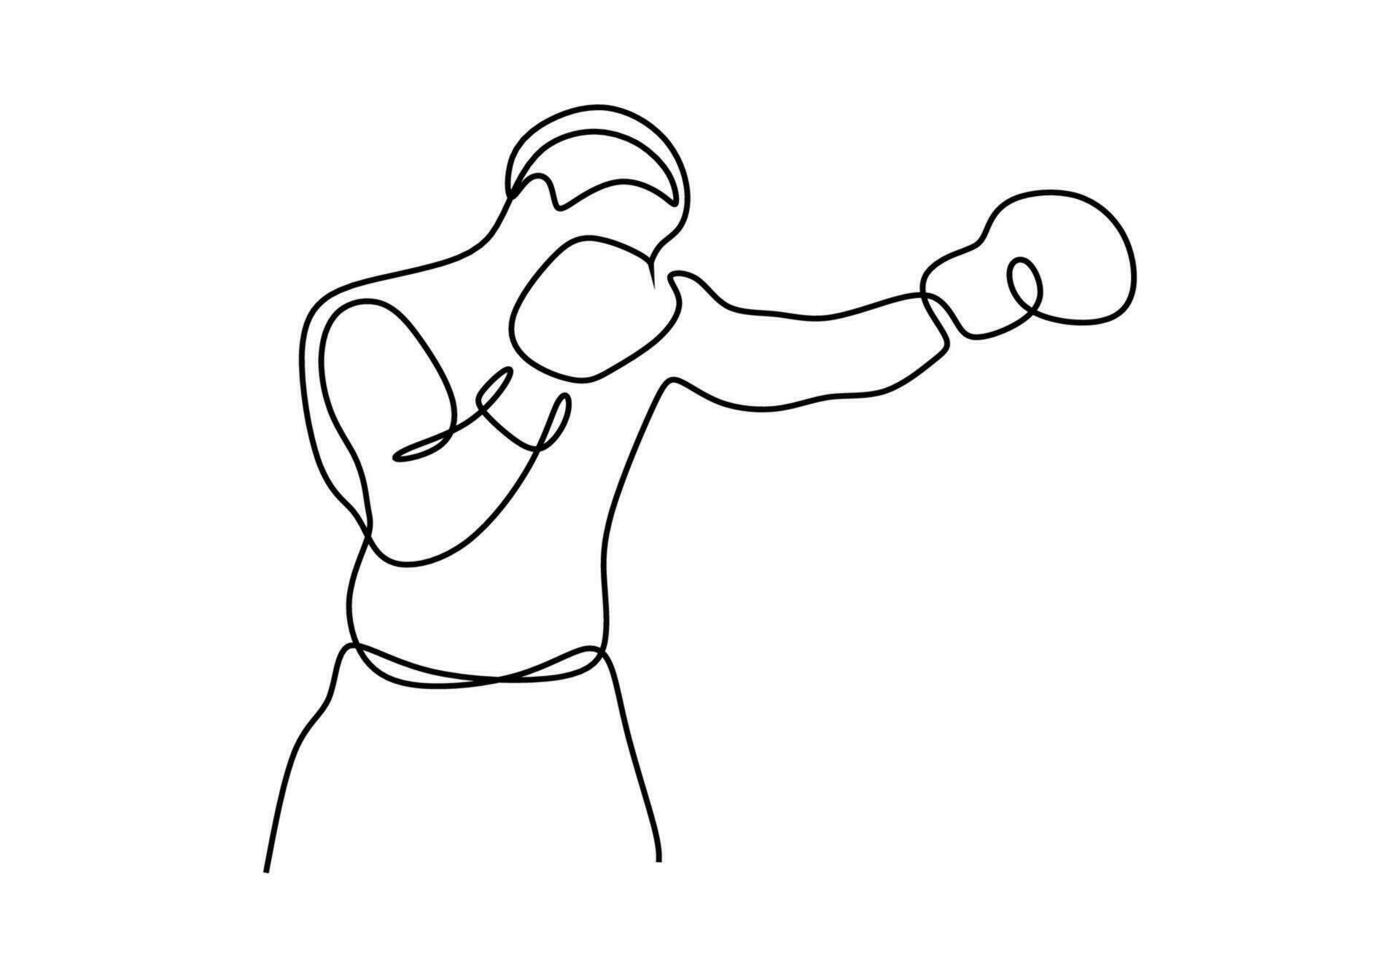 boxer 1 linha desenho, soco pose contínuo mão desenhado esboço arte. vetor